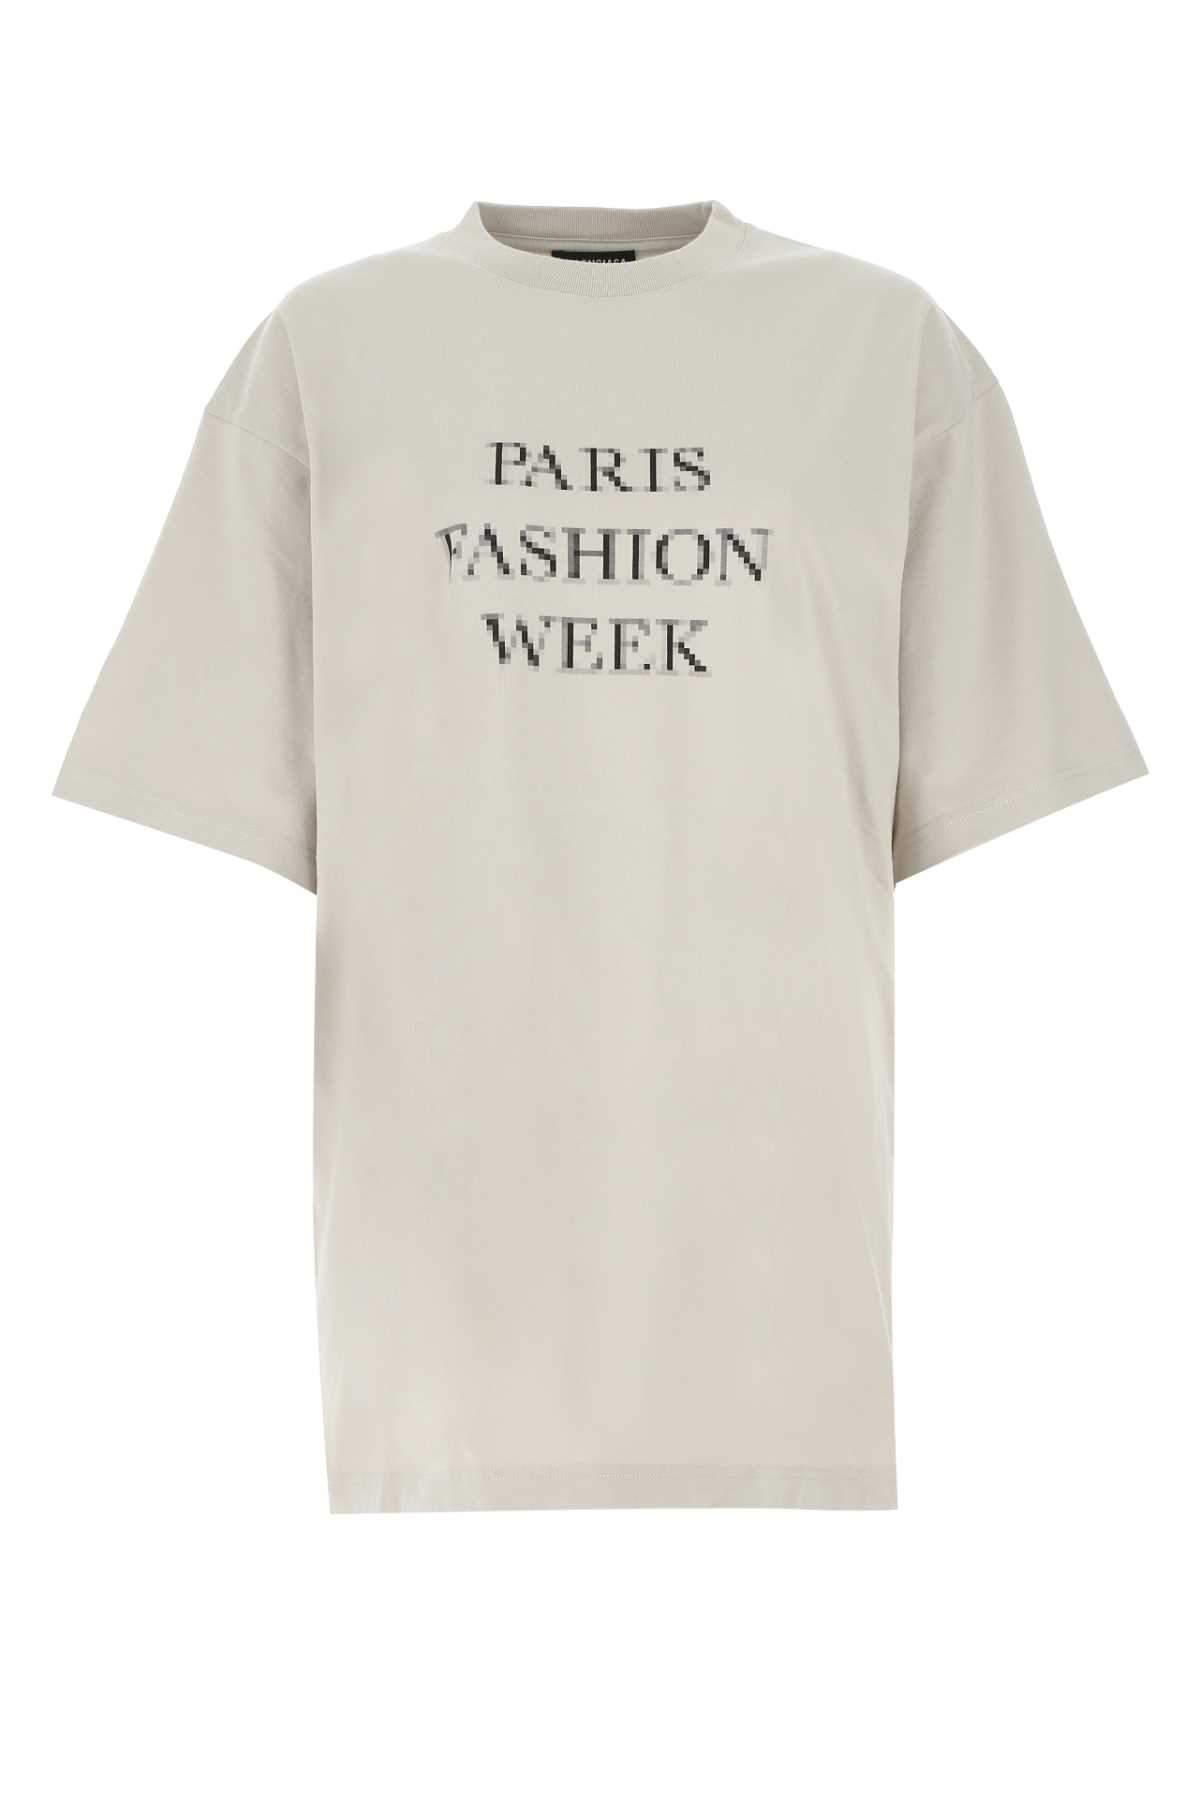 Balenciaga Paris Fashion Print T-shirt in Gray Men Lyst